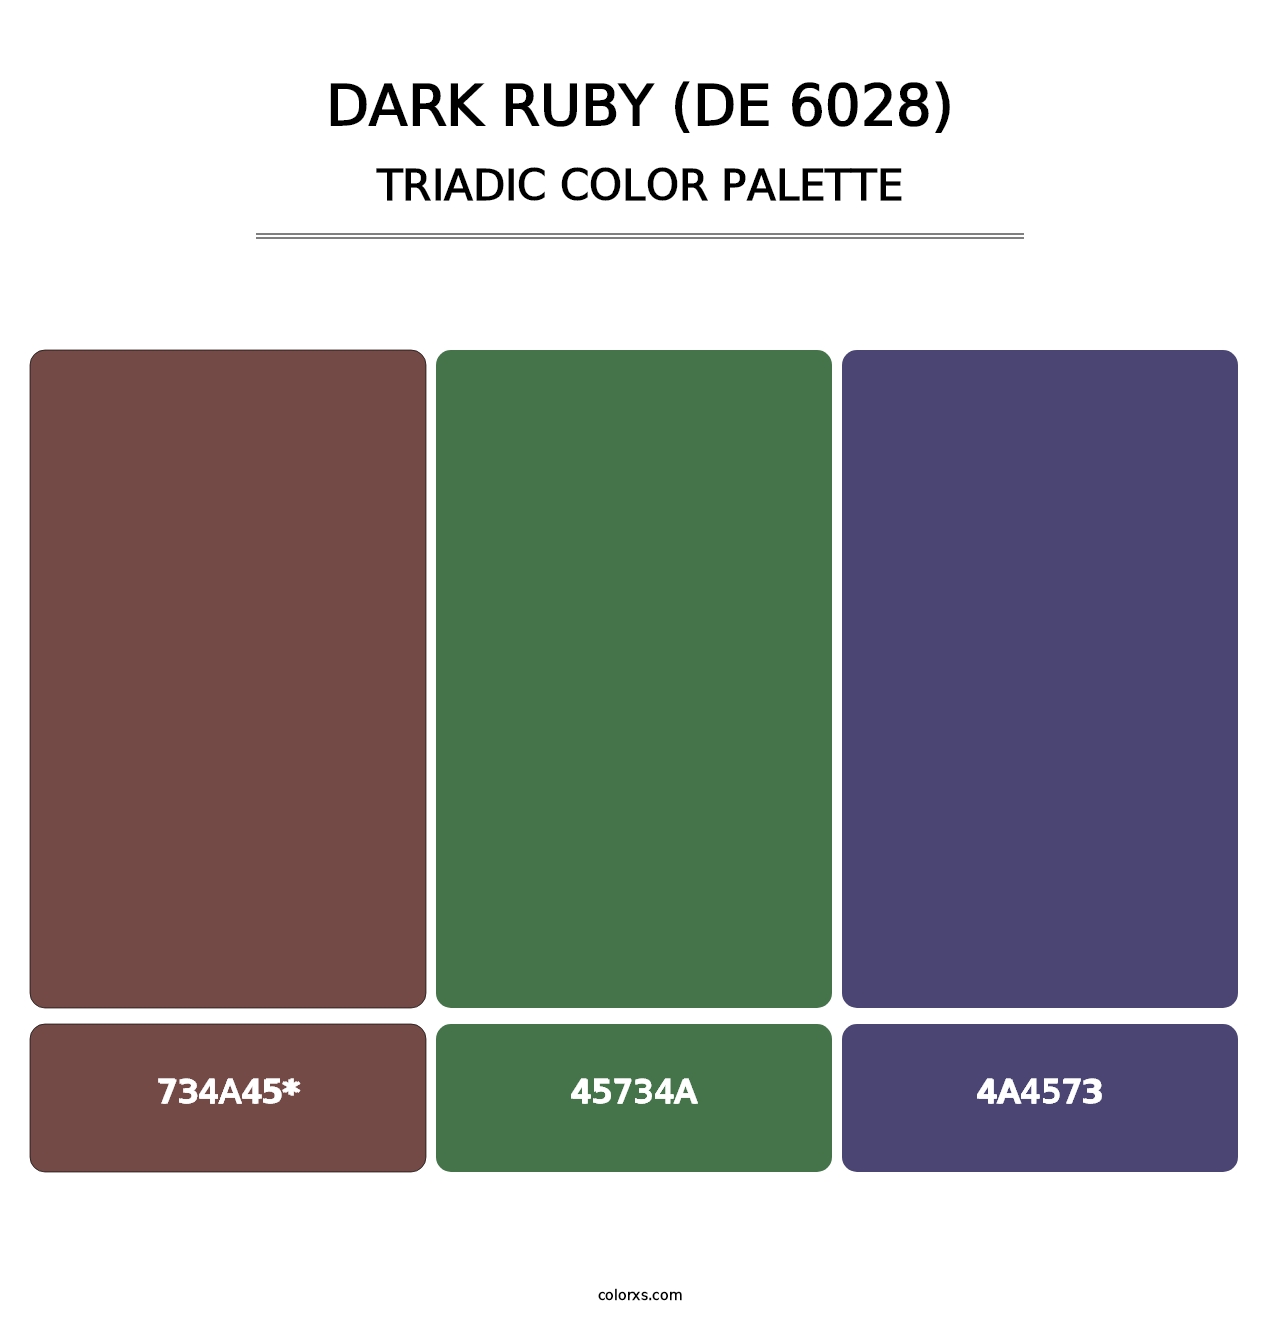 Dark Ruby (DE 6028) - Triadic Color Palette